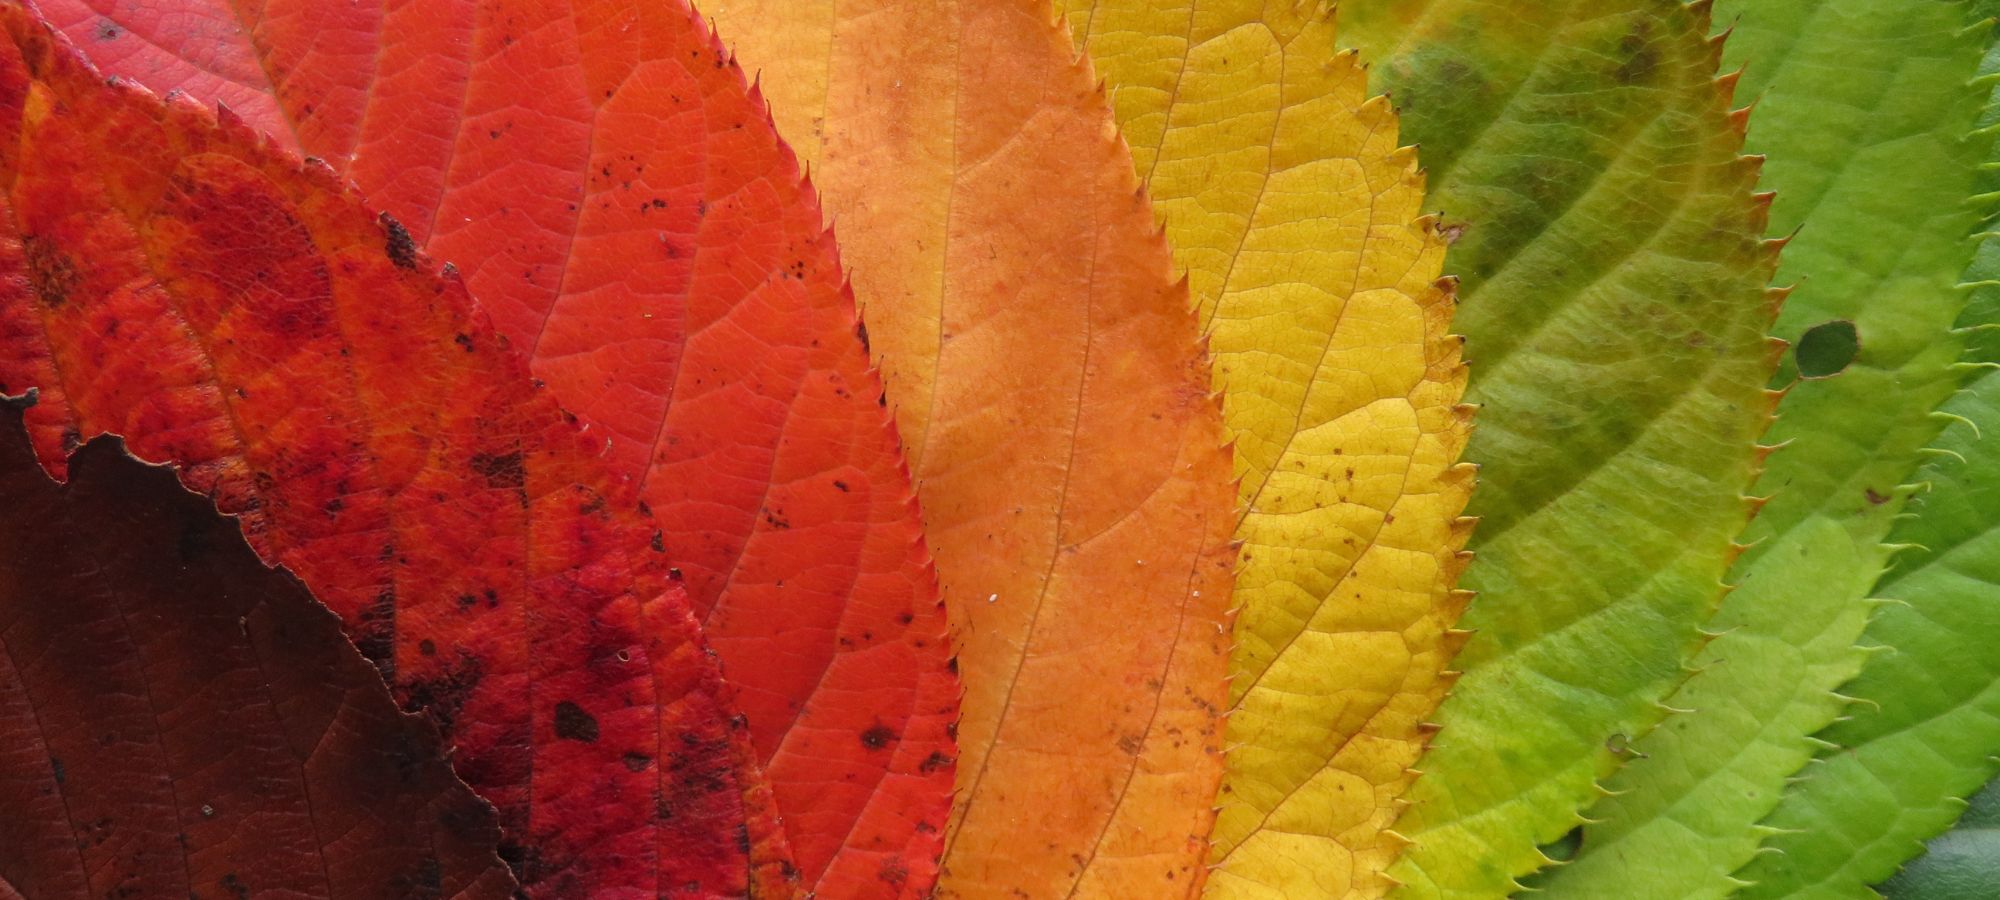 Colourful autumn leaves